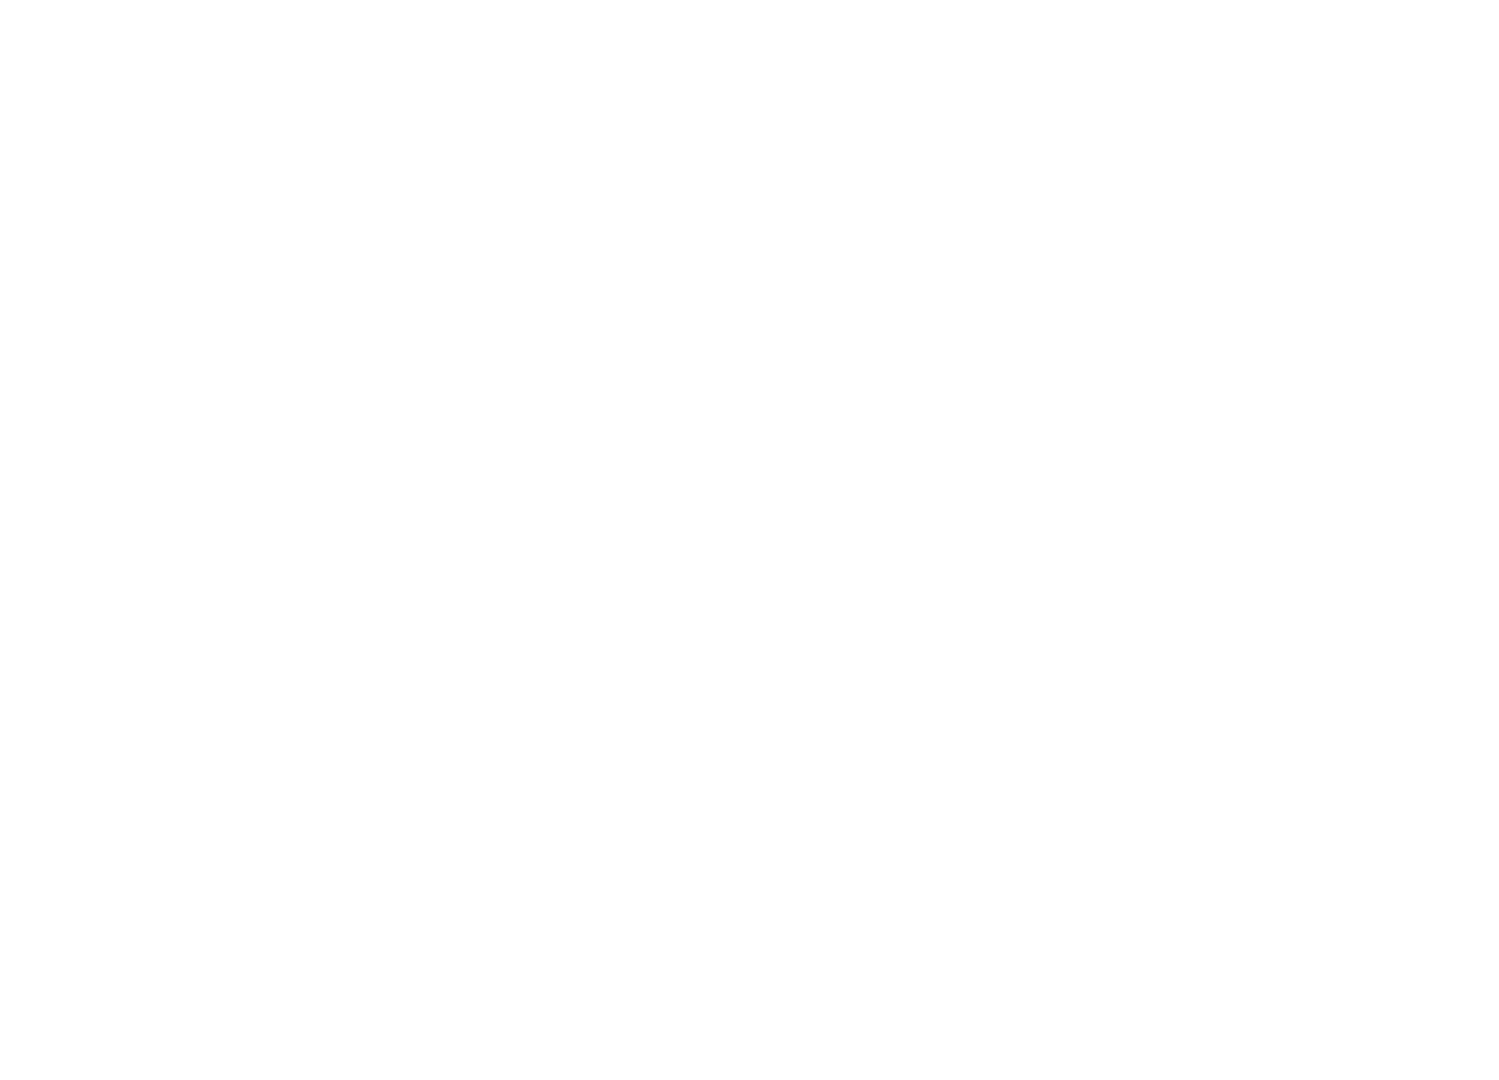 Das yfood-Logo in der produzierenden Industrie.